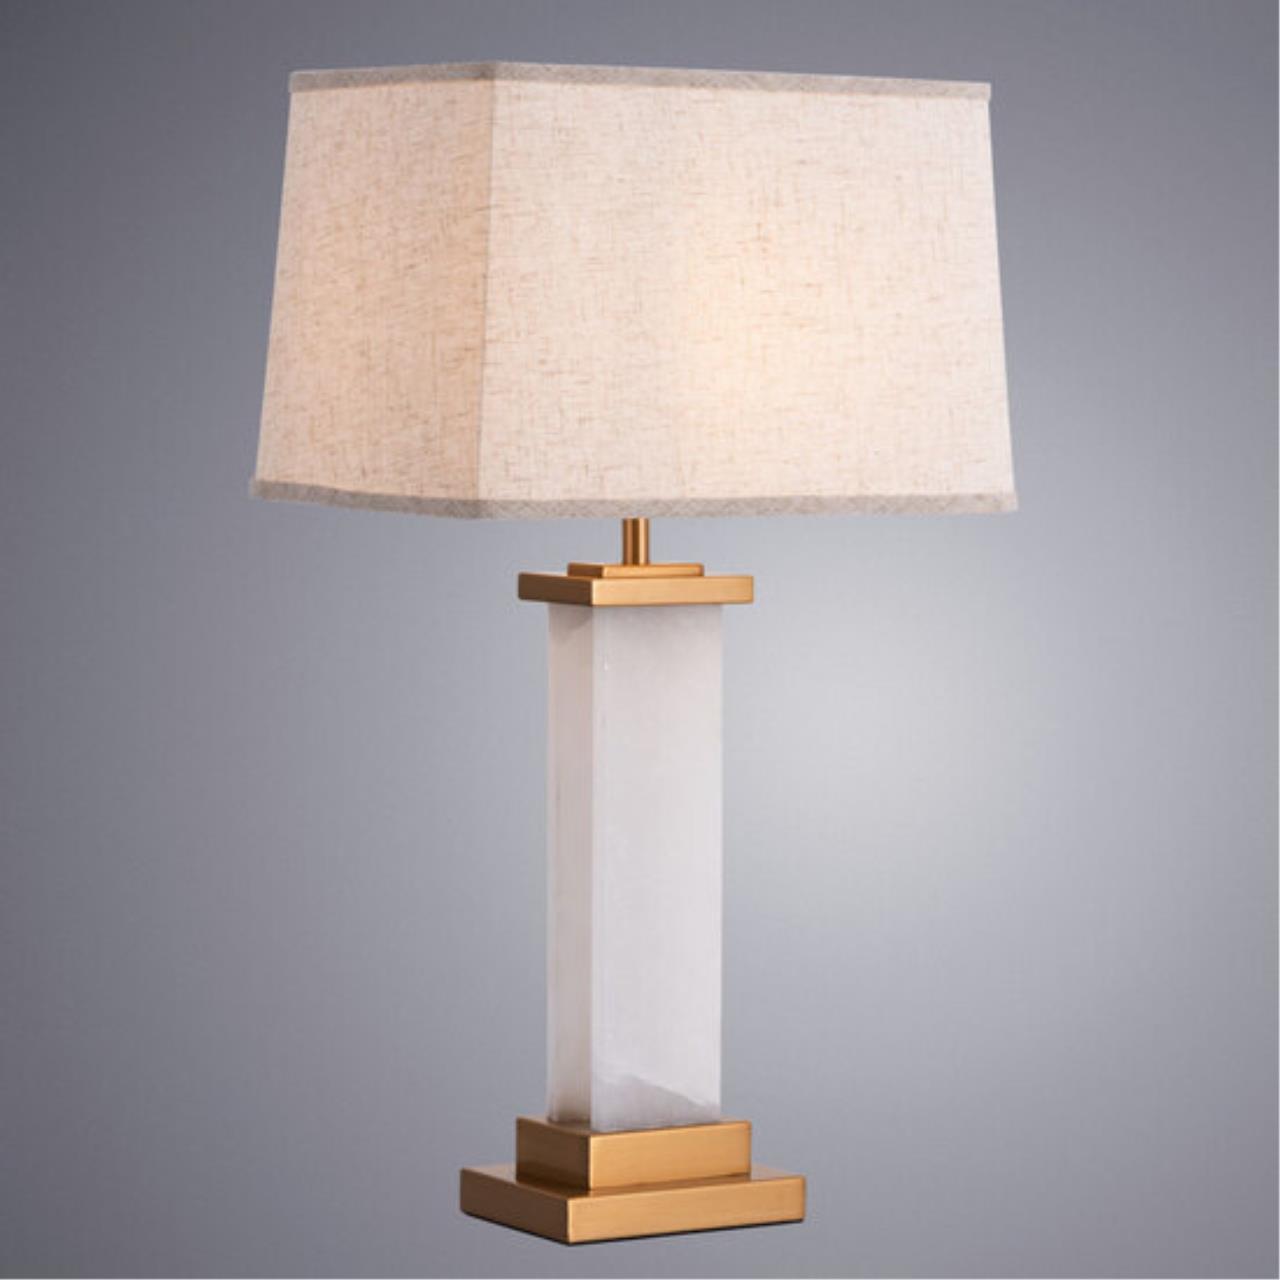 Интерьерная настольная лампа Arte lamp A4501LT-1PB